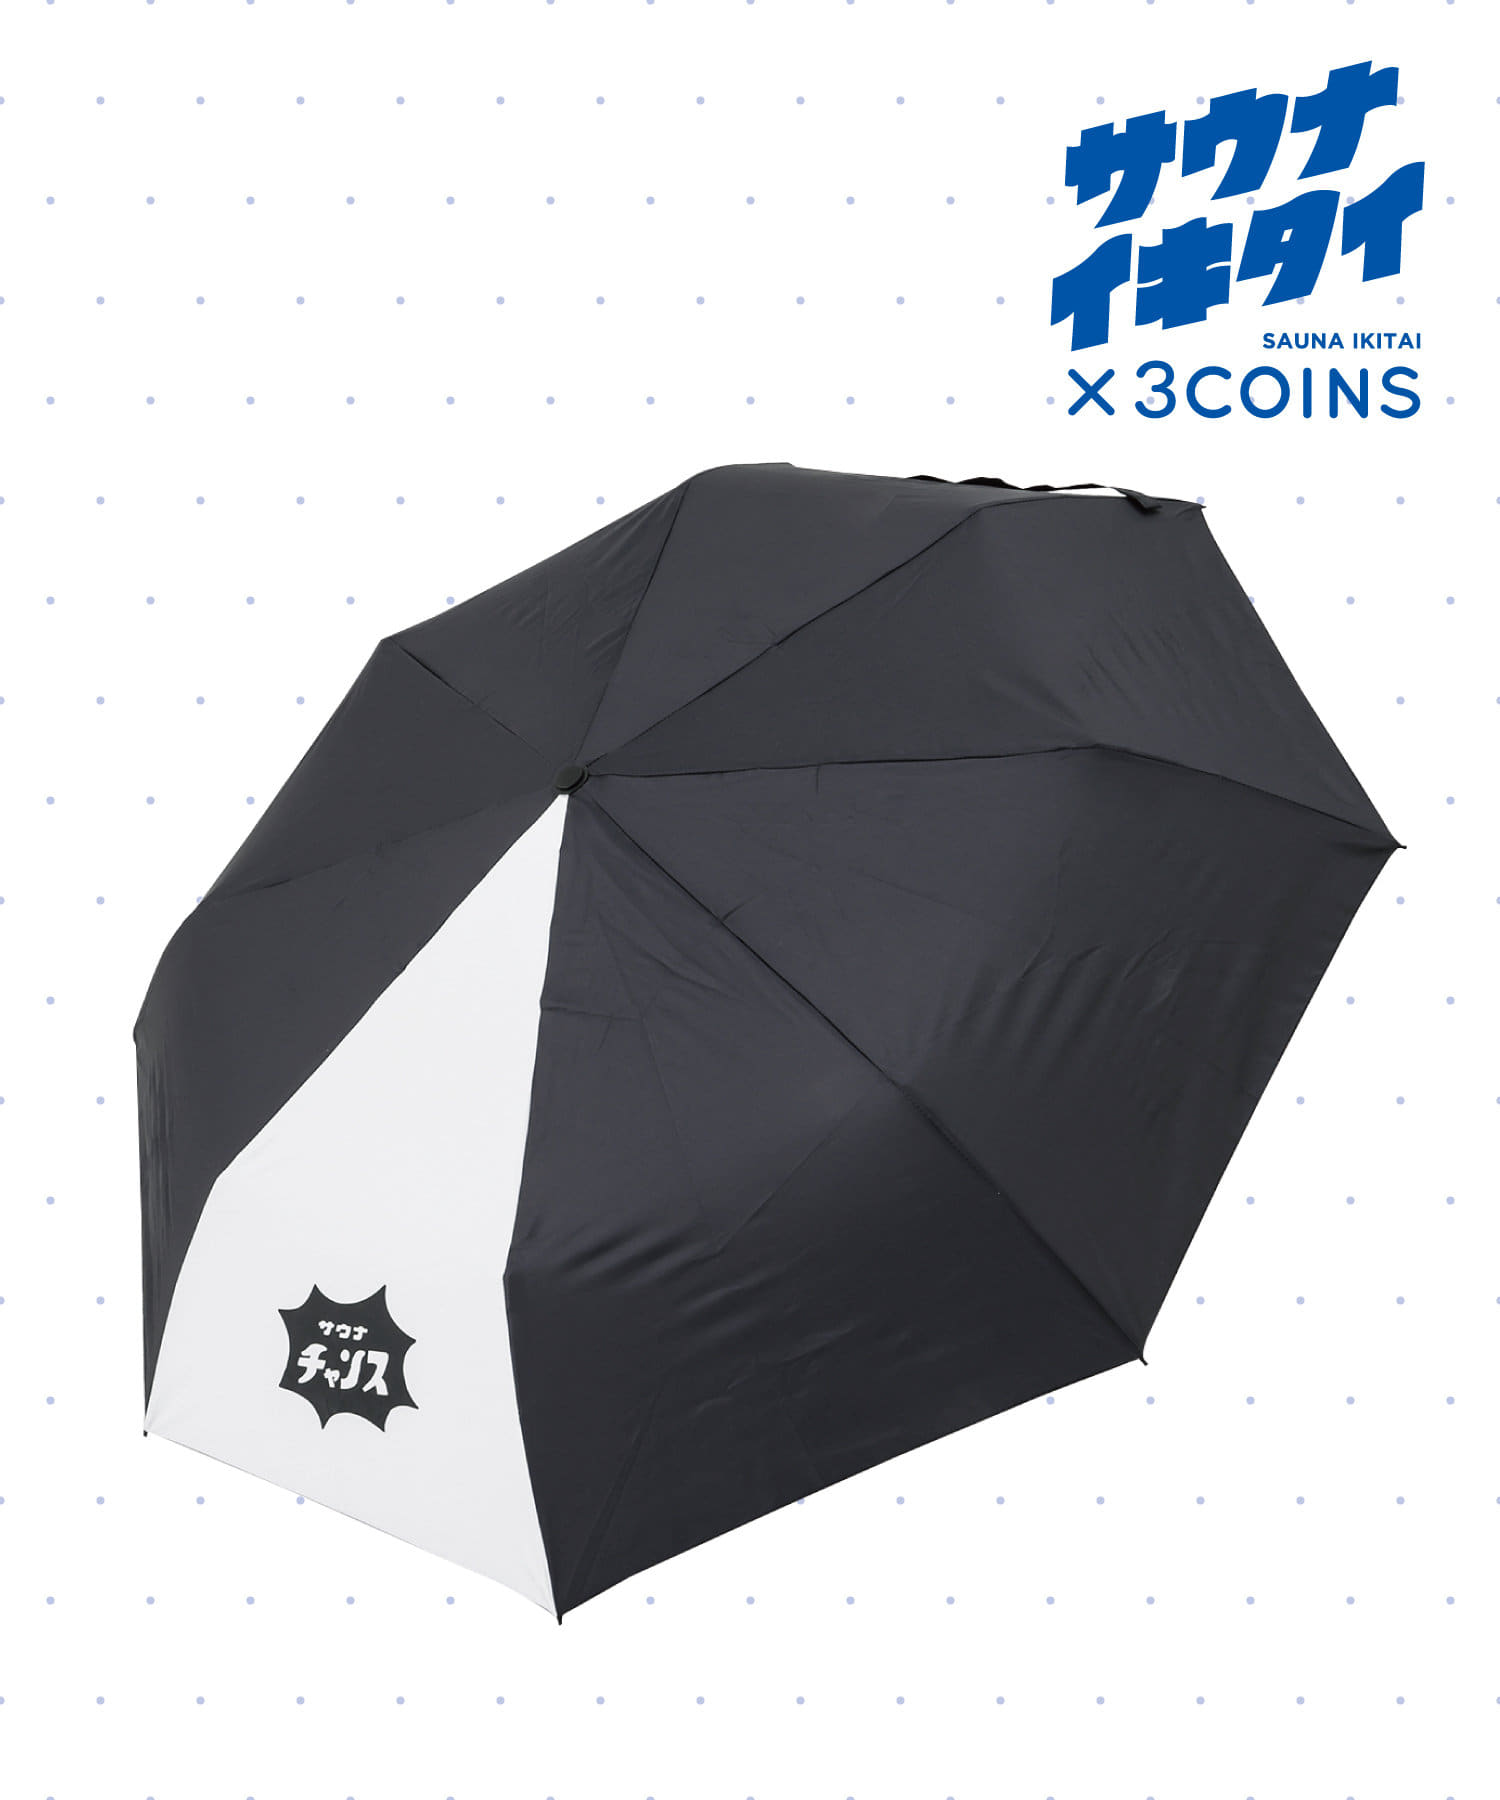 3COINS(スリーコインズ) 【サウナイキタイ】折りたたみ傘